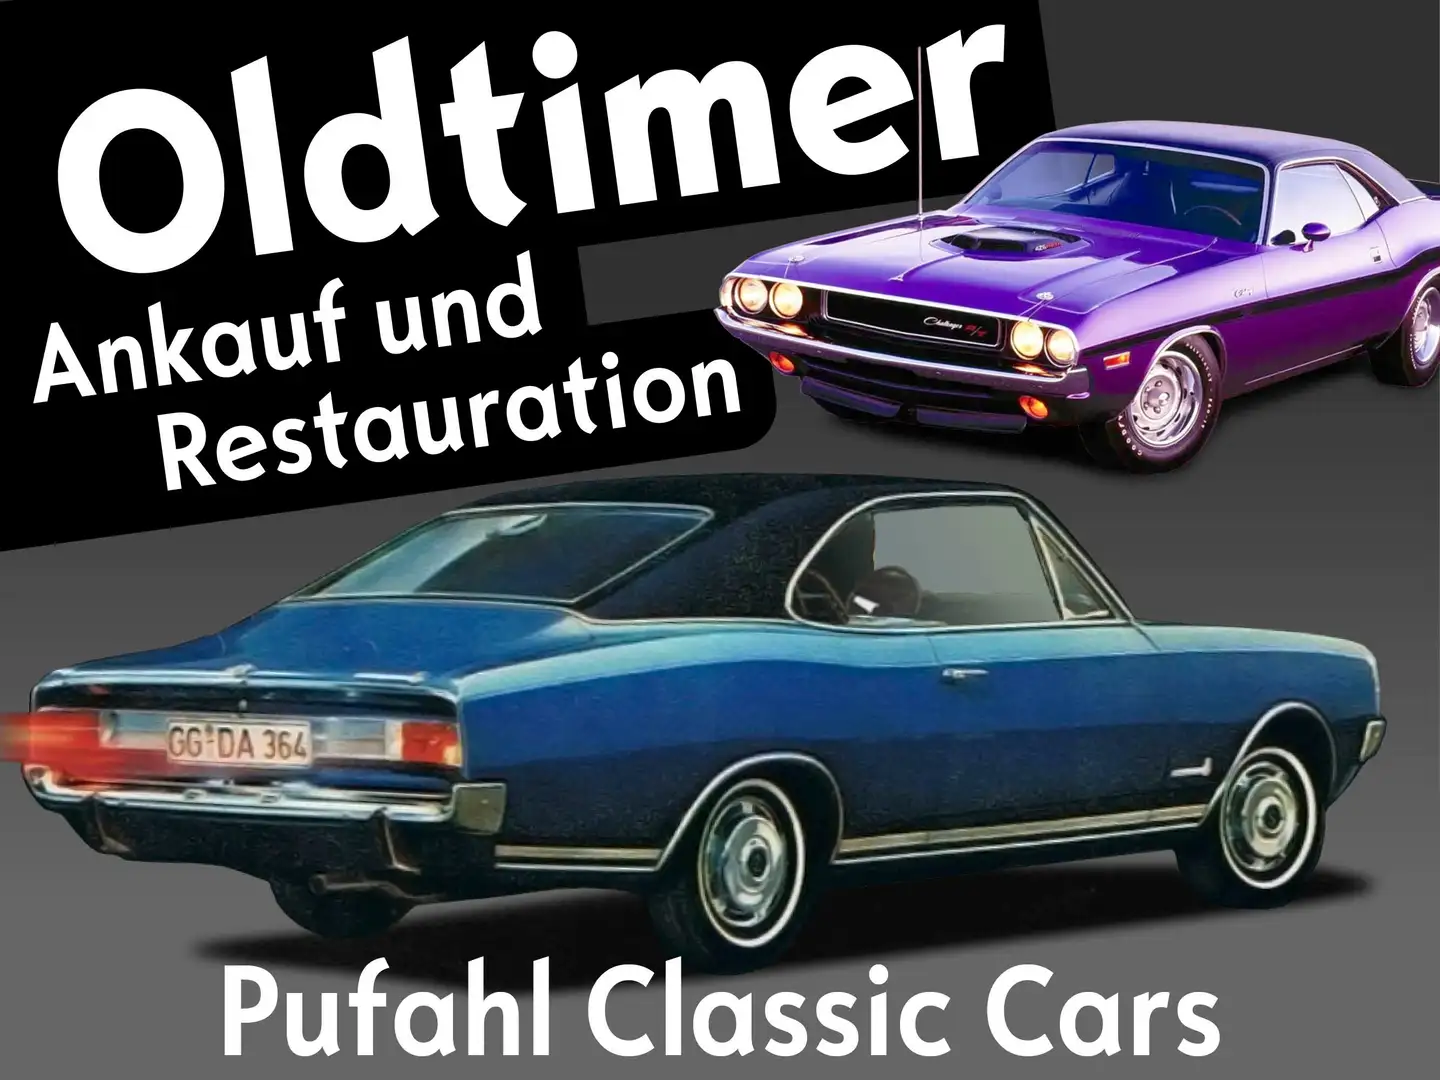 Pontiac Firebird Pufahl Classic Cars Ankauf und Restauration Negru - 1